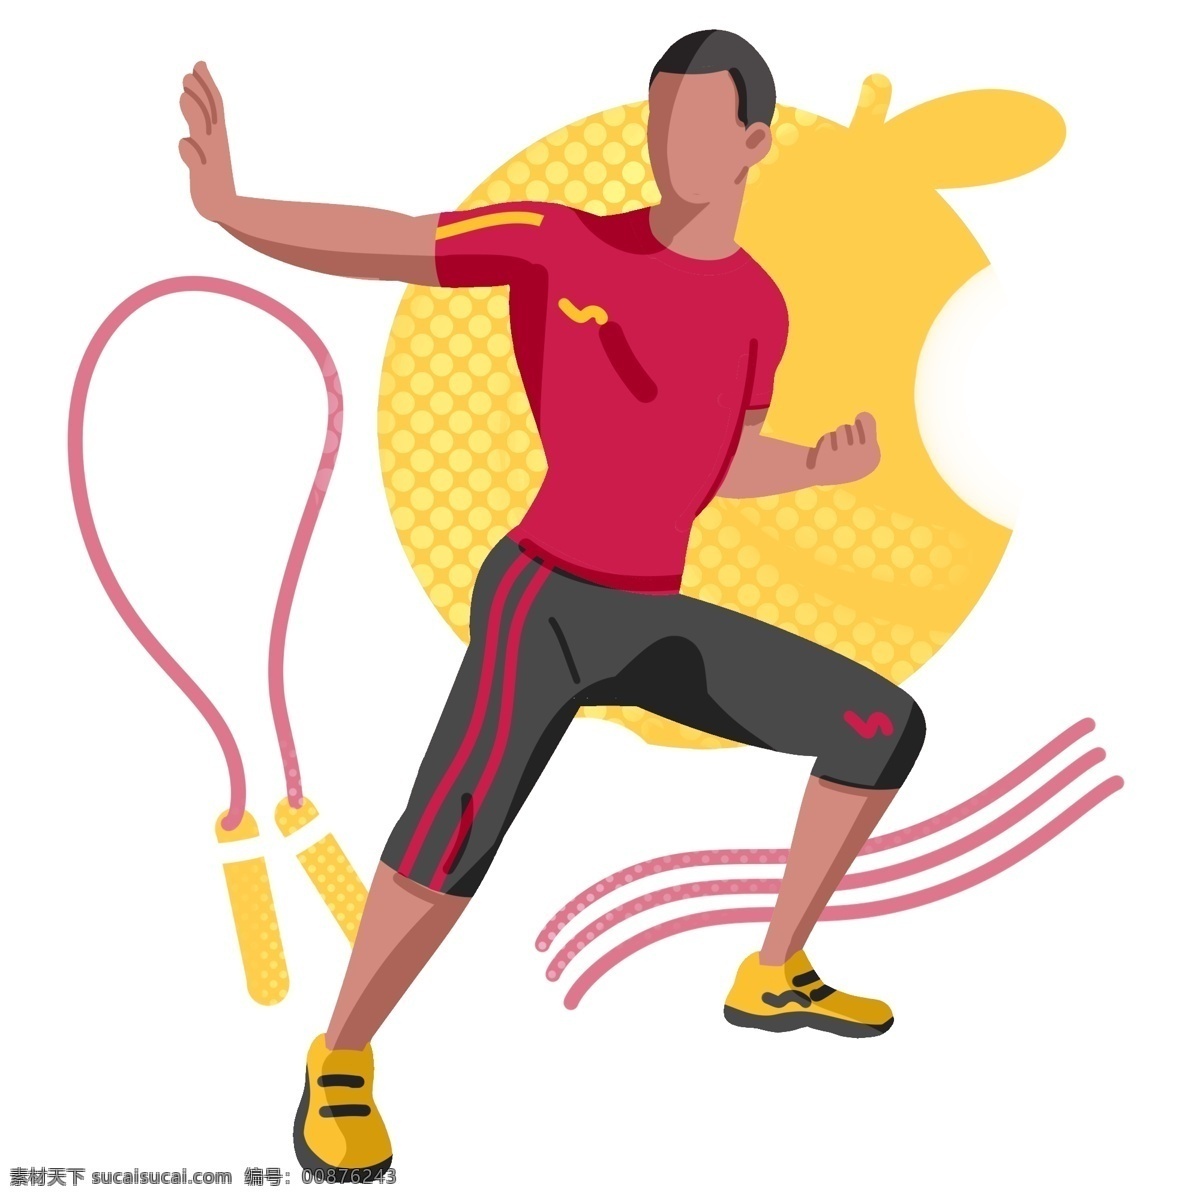 跳绳 运动 卡通 插画 跳绳的运动 卡通插画 运动插画 健身运动 锻炼身体 活动筋骨 红色的绳子